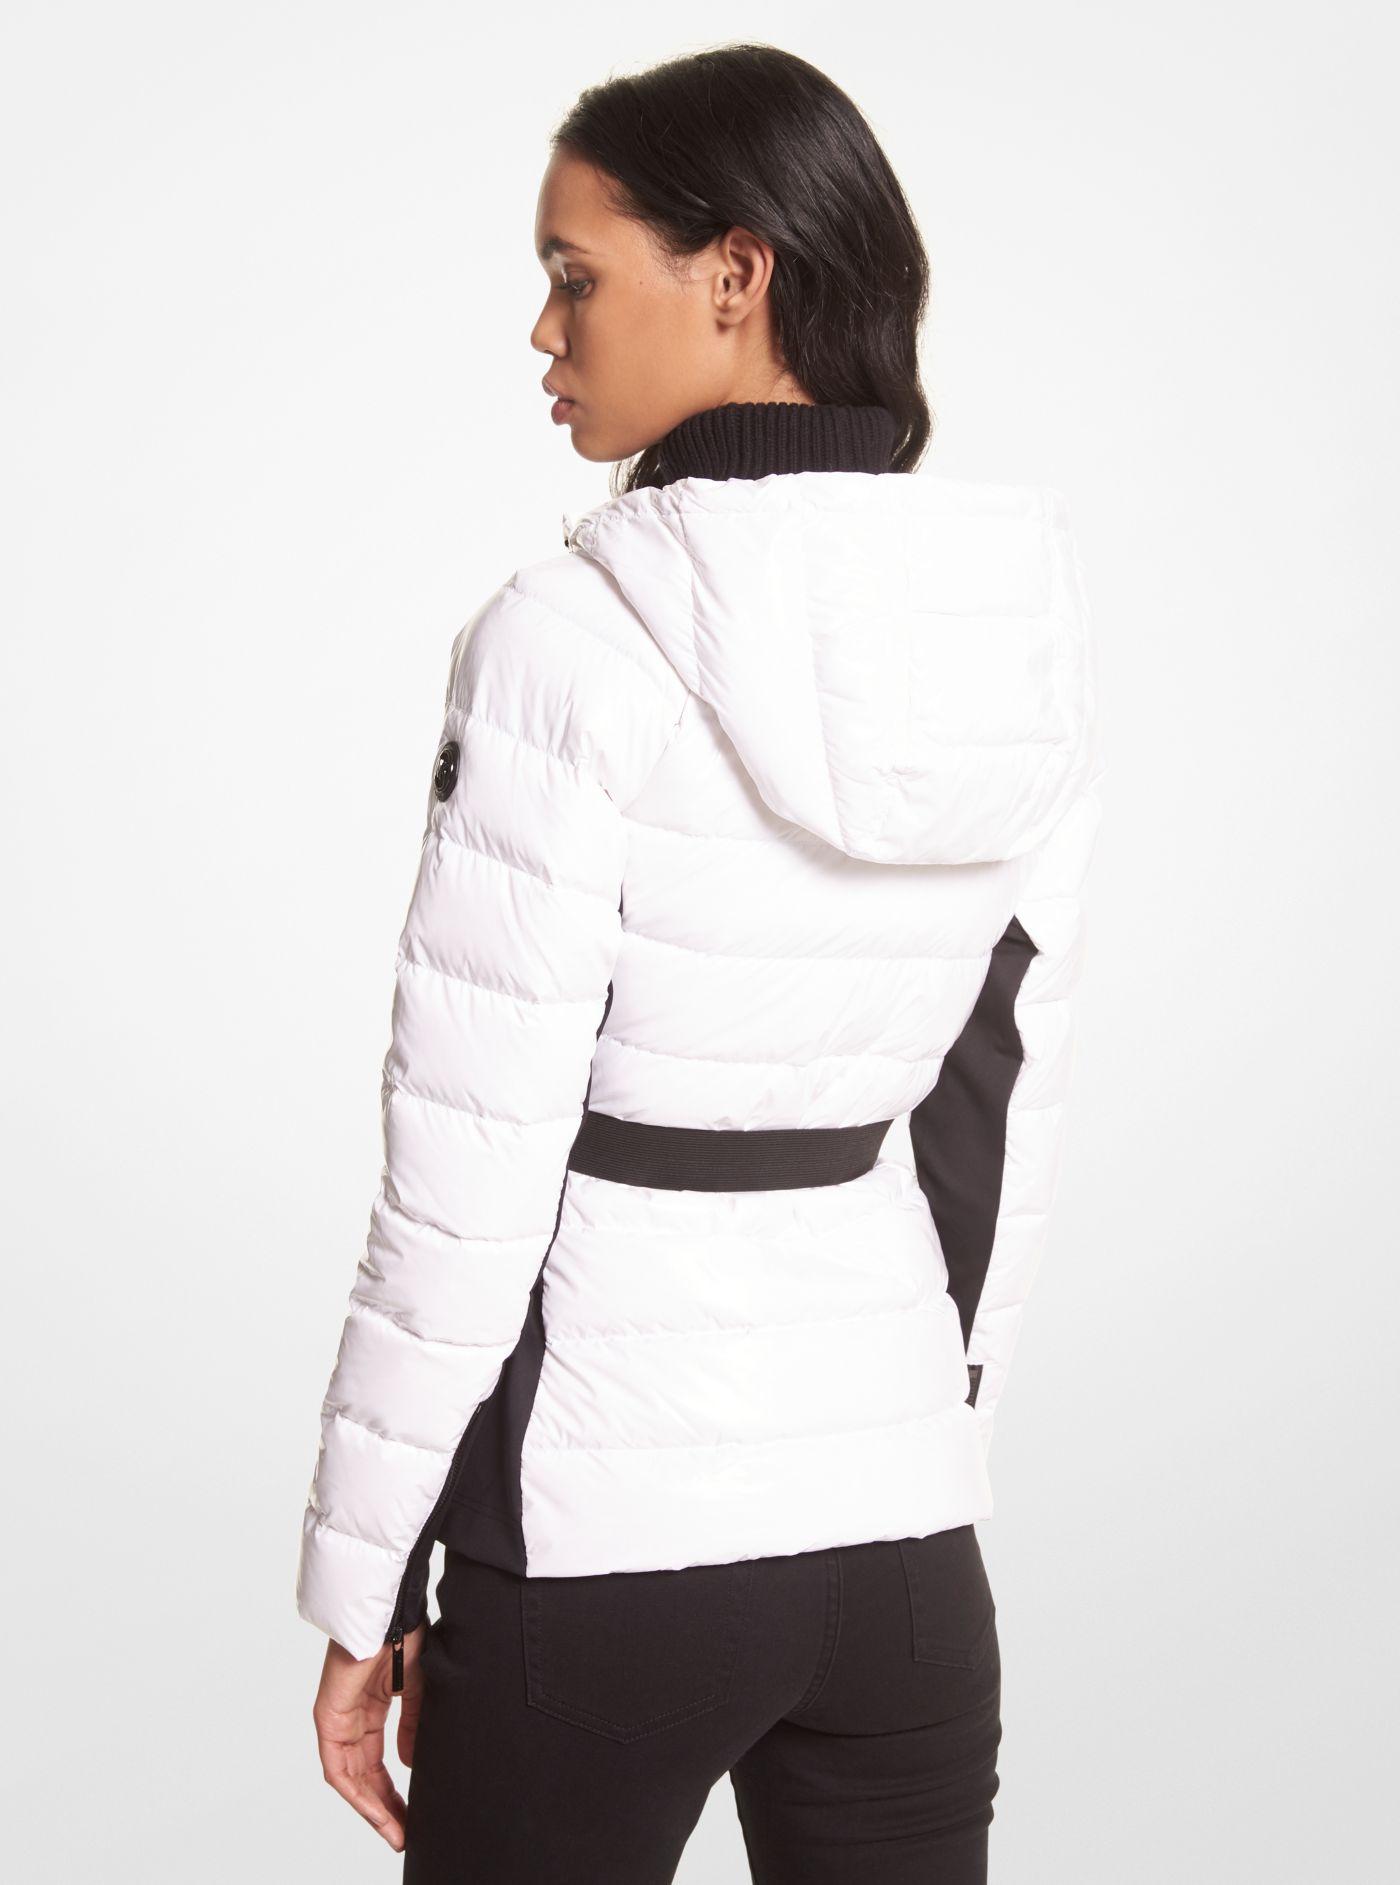 Total 78+ imagen michael kors womens puffer jacket - Abzlocal.mx